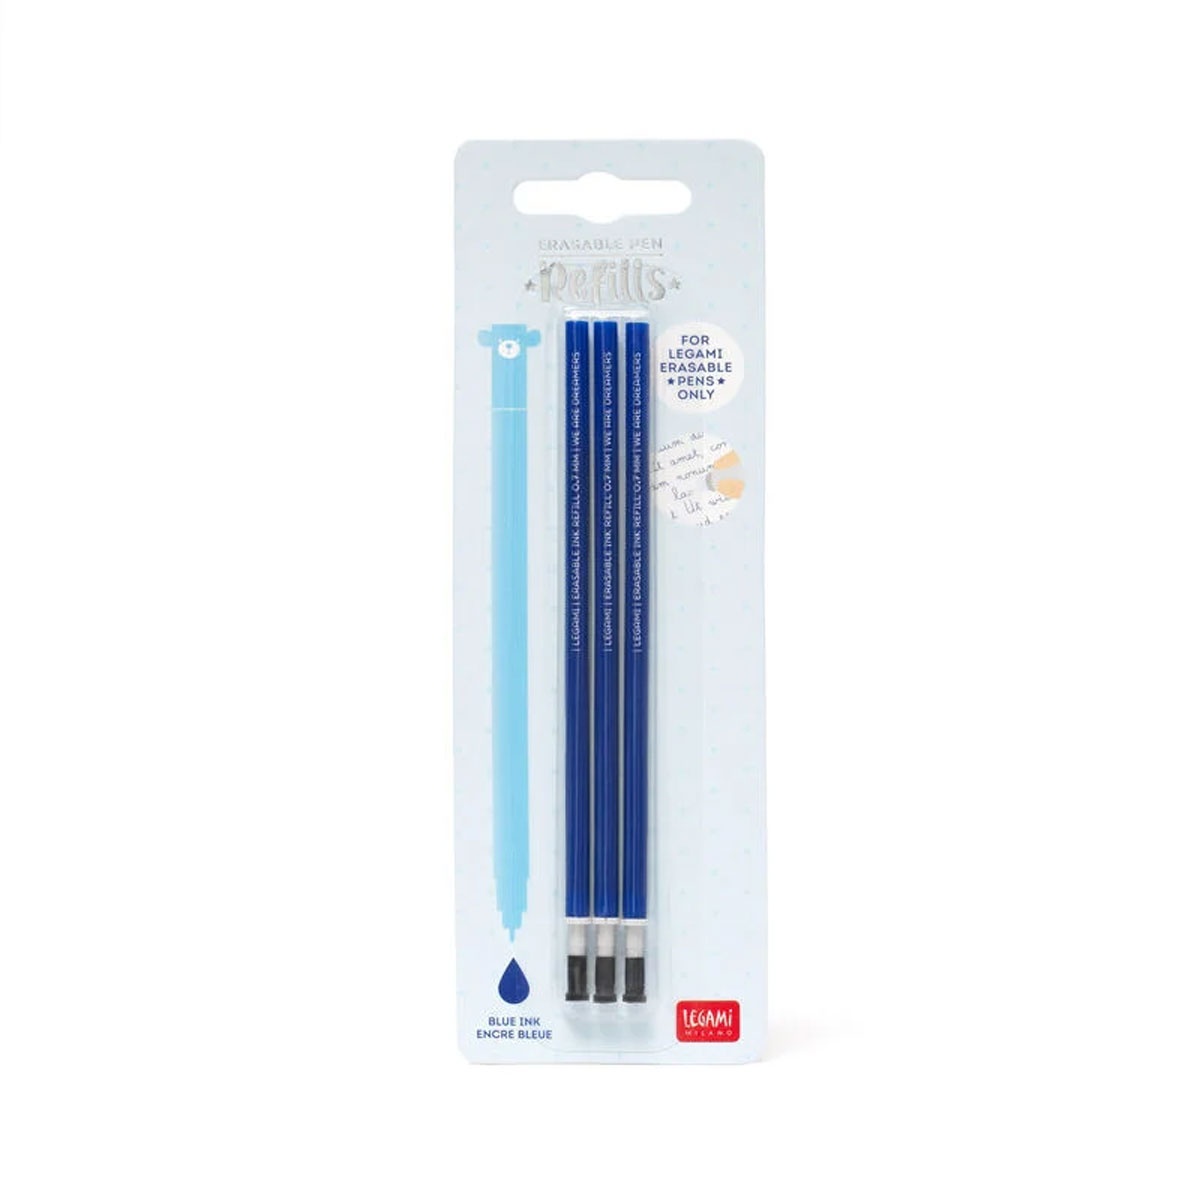 3 Ersatzminen für löschbaren Gelstift - Erasable Pen blau